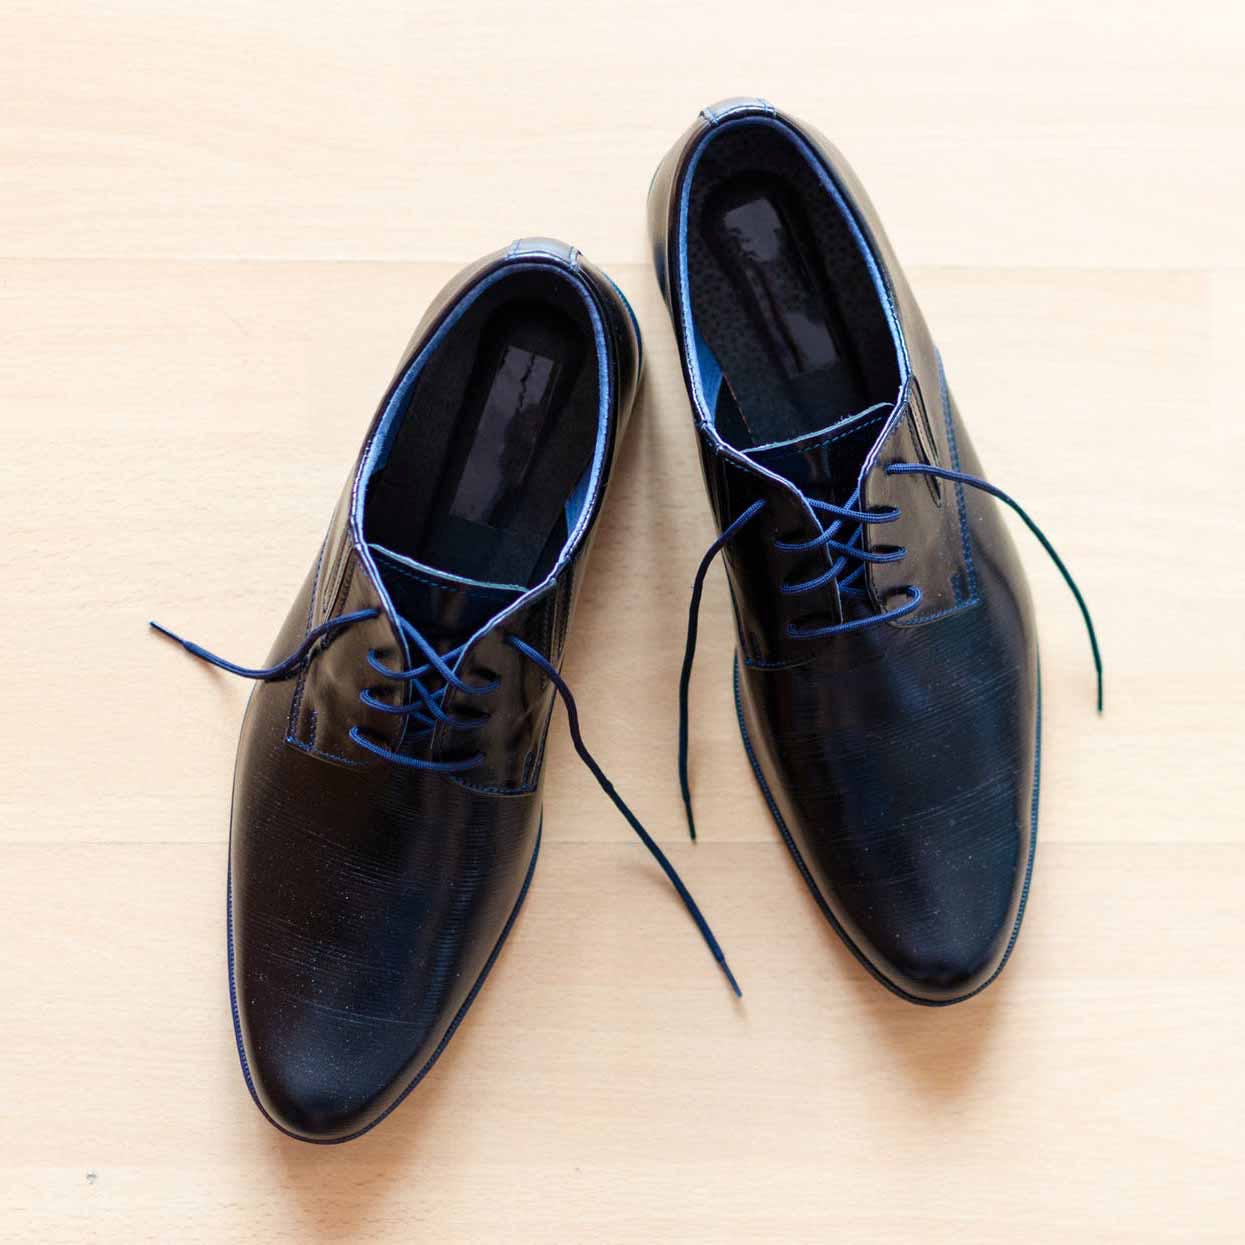 Footwear,Shoe,Black,Dress shoe,Oxford shoe,Leather,Dancing shoe